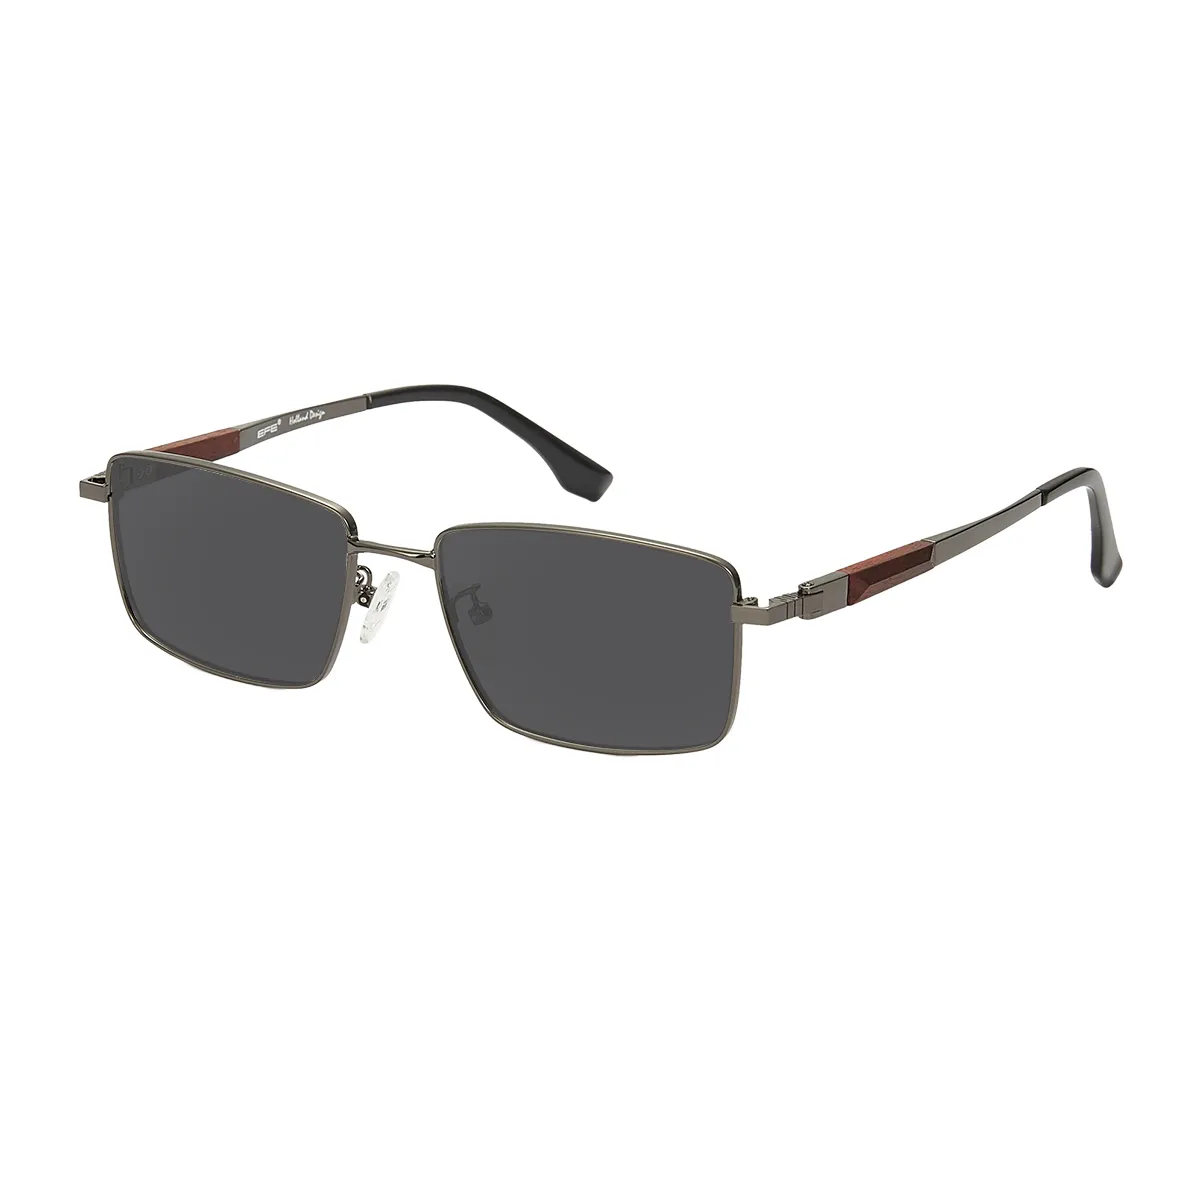 Gentry - Rectangle  Sunglasses for Men